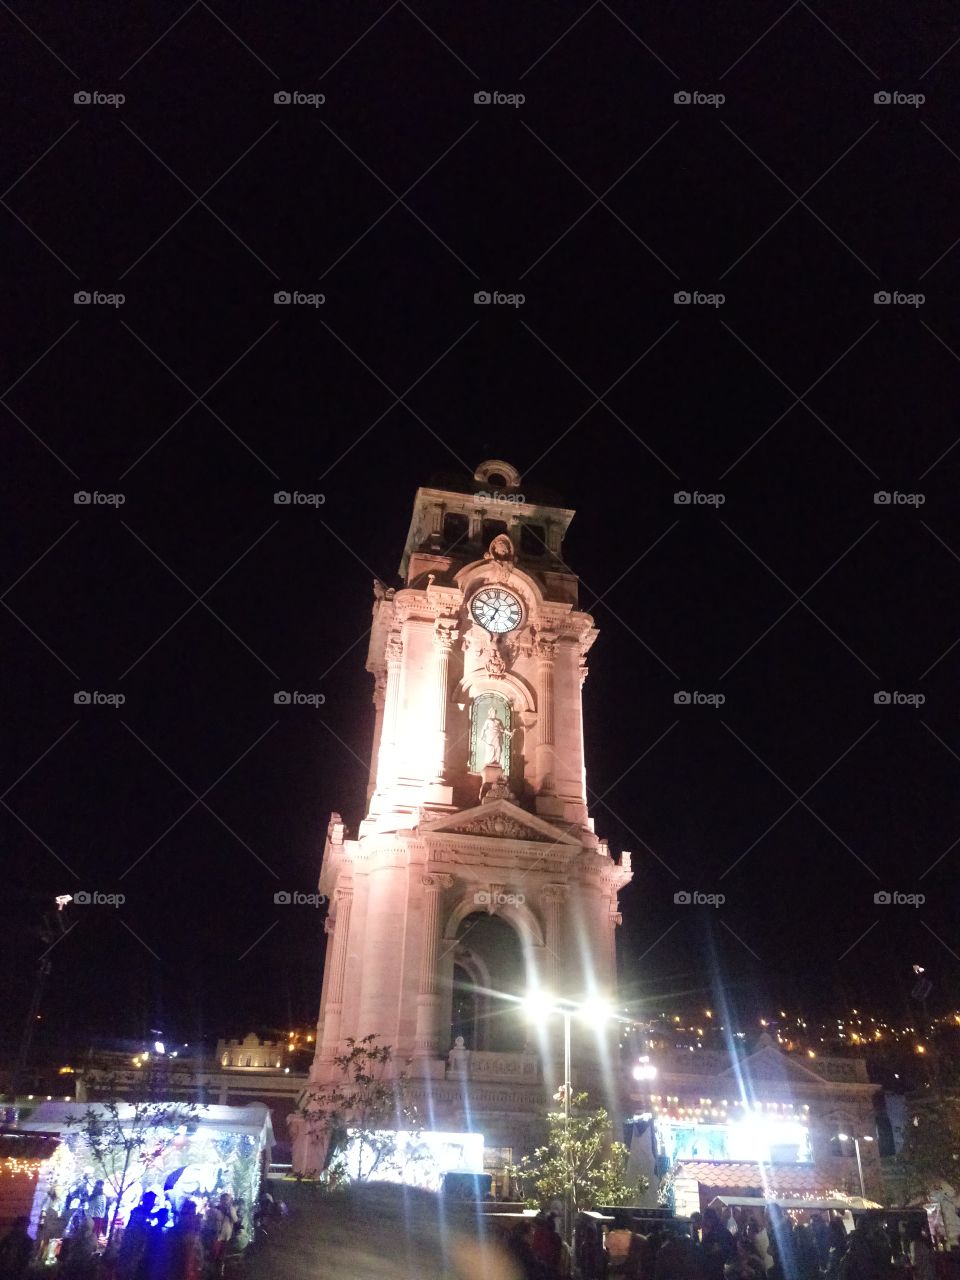 reloj
reloj Pachuca
monumento
clock
Hidalgo México